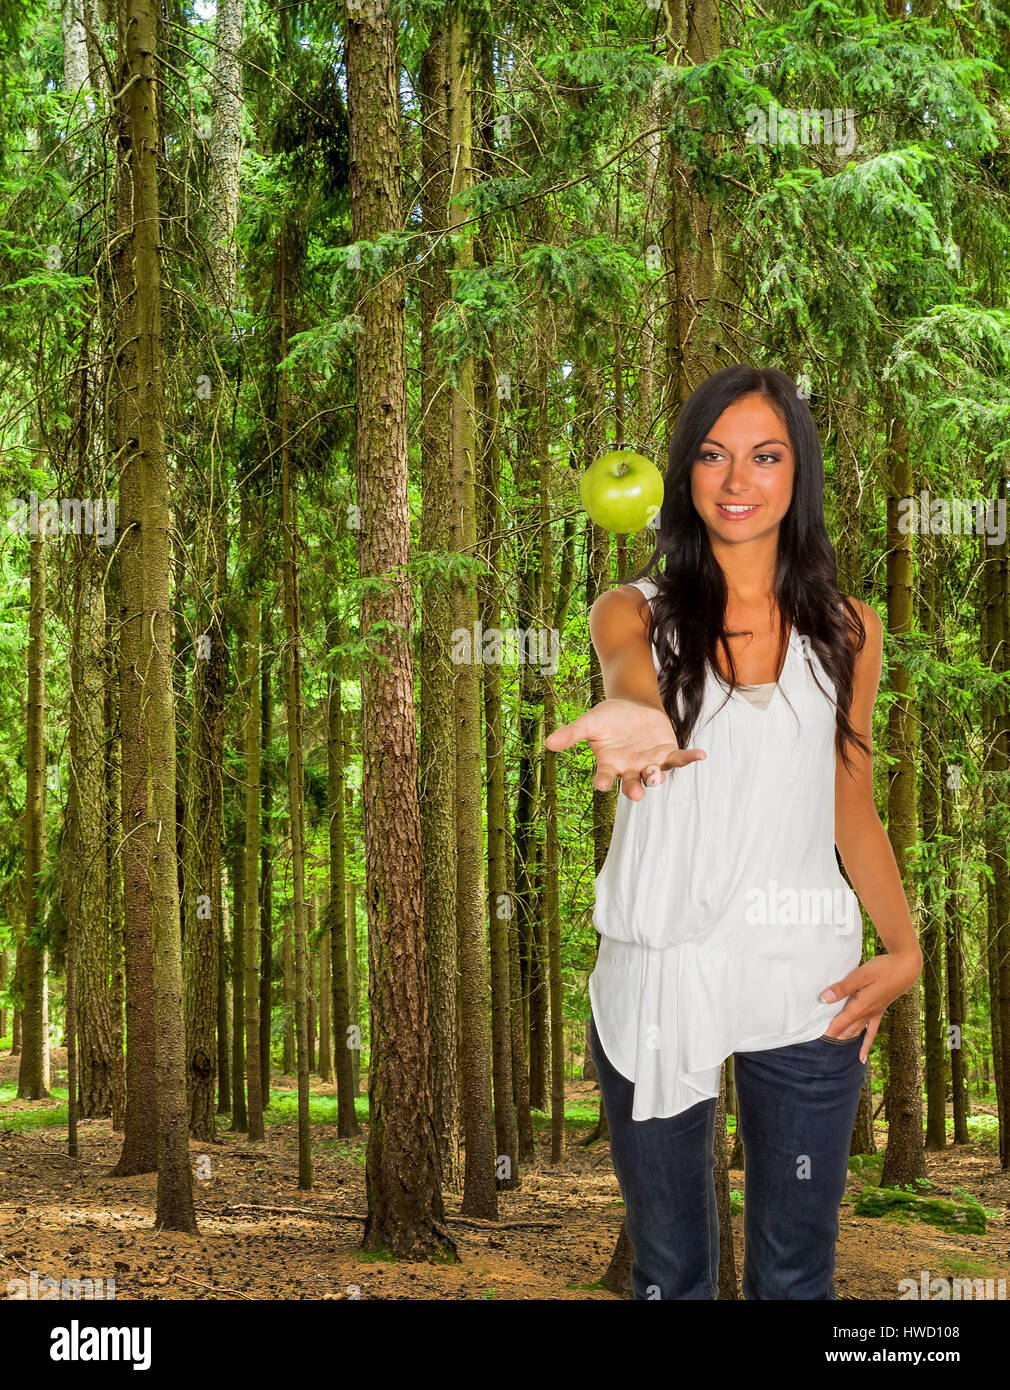 Many trees in a wood with fresh green and a woman with an apple, Viele Bäume in einem Wald mit frischem Grün und einer Frau mit einem Apfel Stock Photo